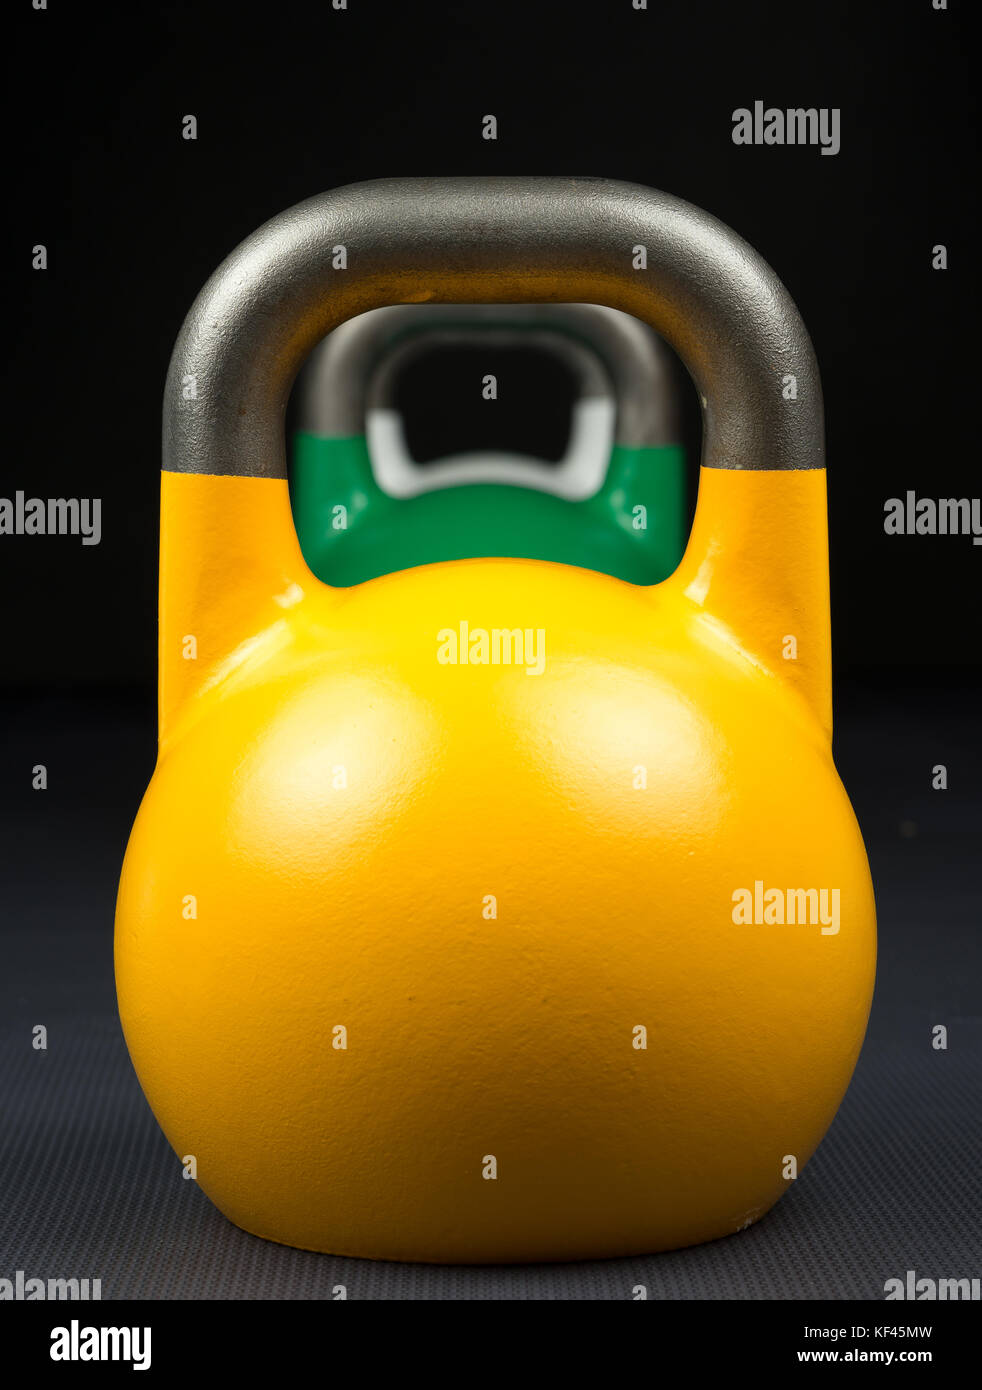 Gelb, Grün und Weiß Wettbewerb kettlebells stellten sich in einer Reihe auf ein Krafttraining Gym. Stockfoto